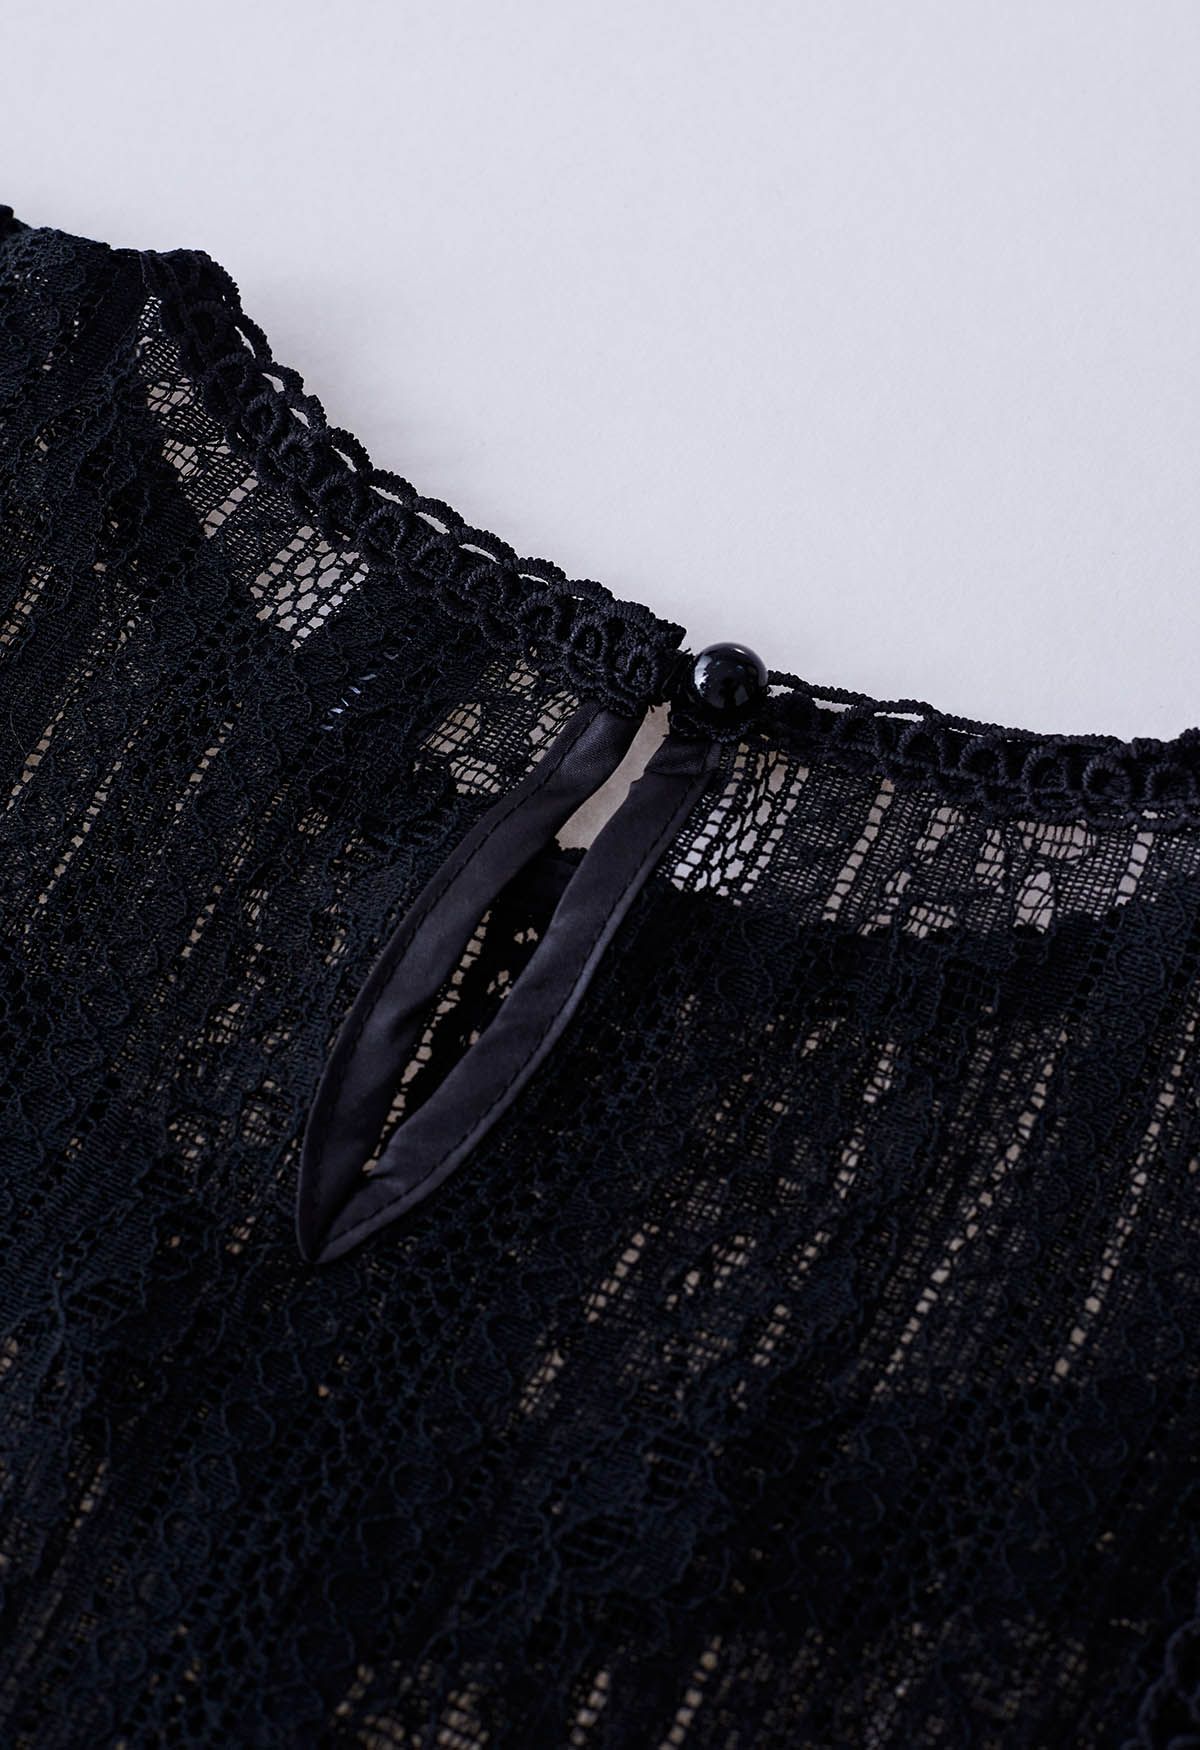 Sheer Sleeve Spliced Cutwork Lace Top in Black